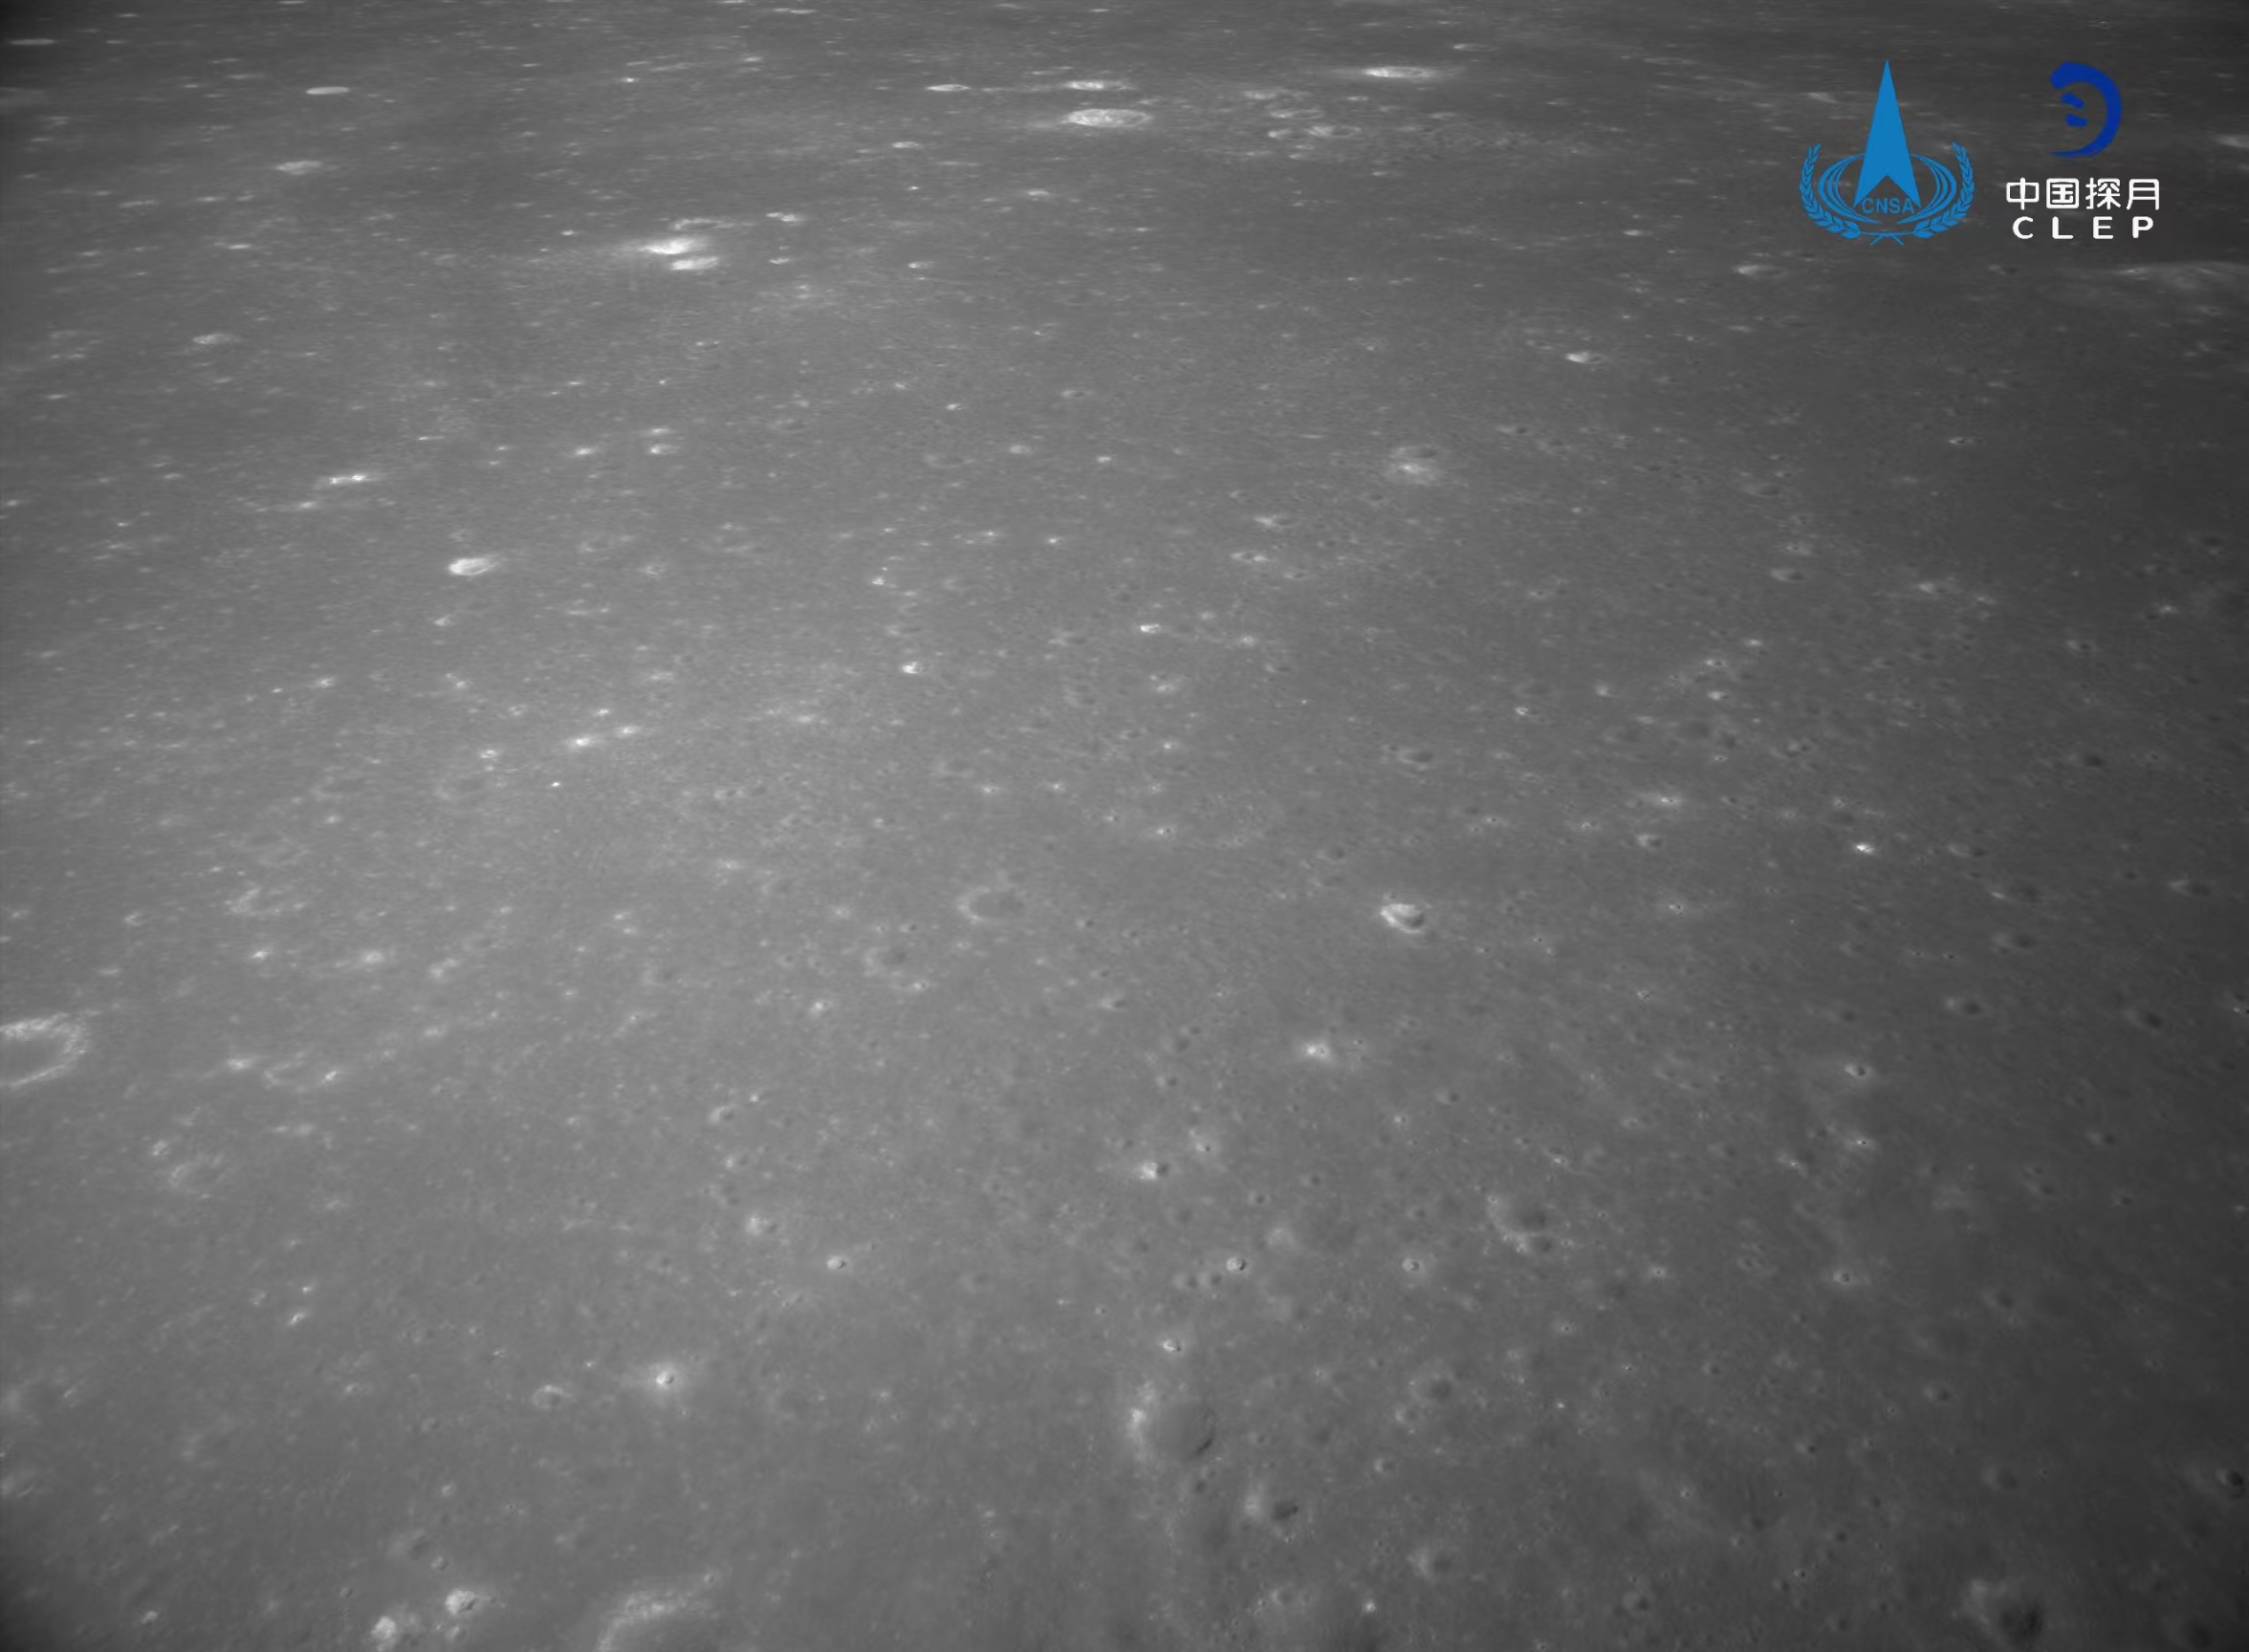 该图由降落相机在降落过程中拍摄，图像显示着陆器底部相对平坦，图像上方是着陆点北部查菲环形山，